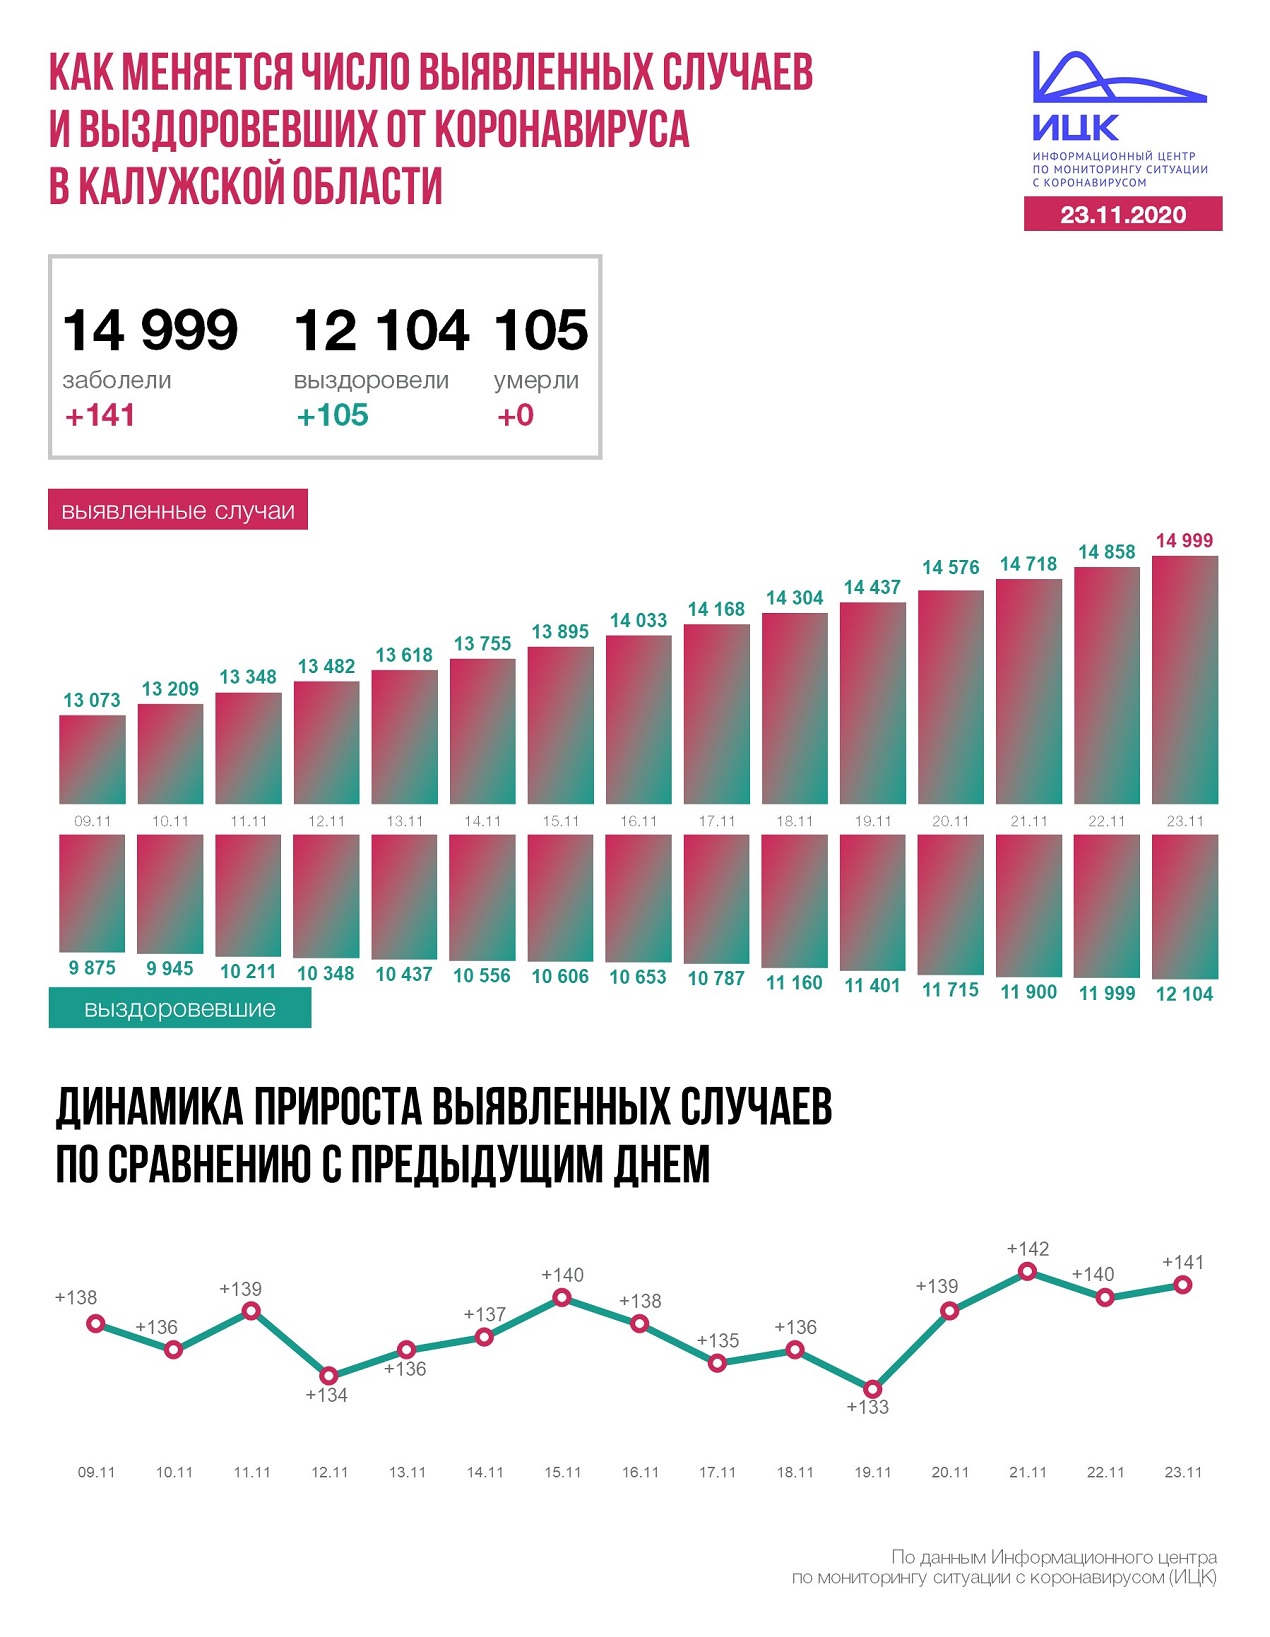 Официальные данные по коронавирусу в Калужской области на 23 ноября 2020 года.